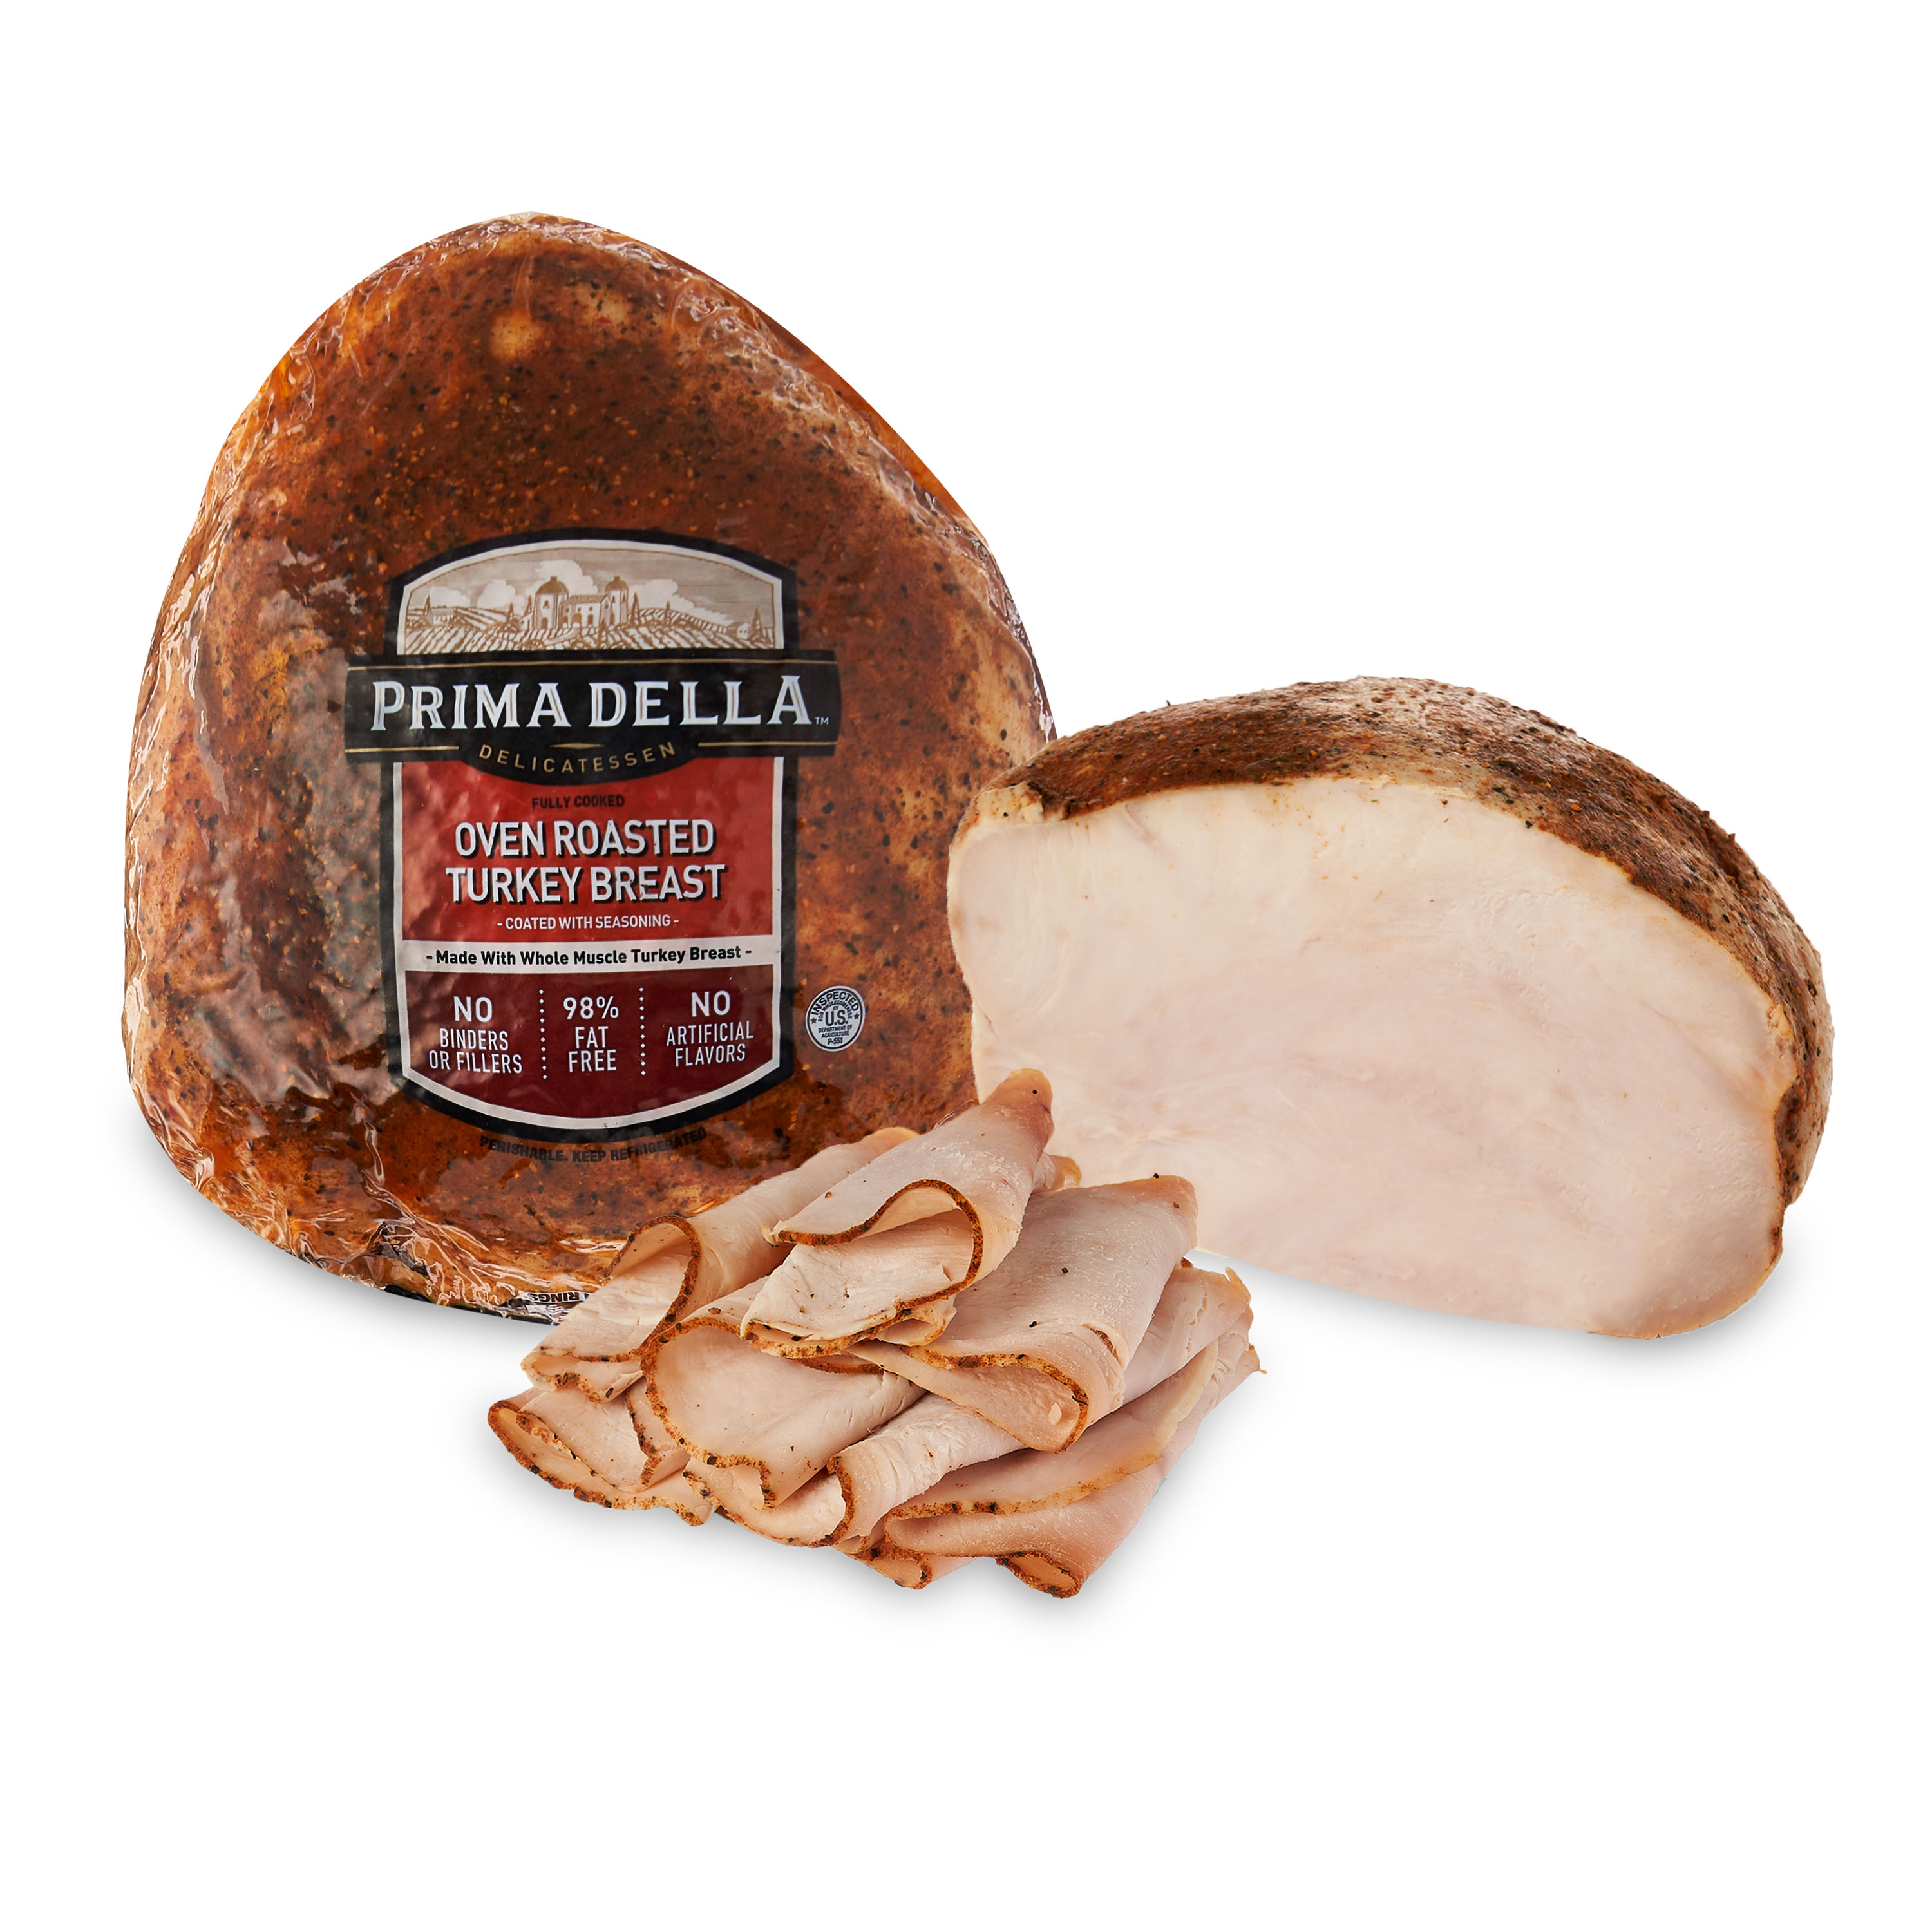 Prima Della Oven Roasted Turkey Breast, Deli Sliced - image 1 of 6